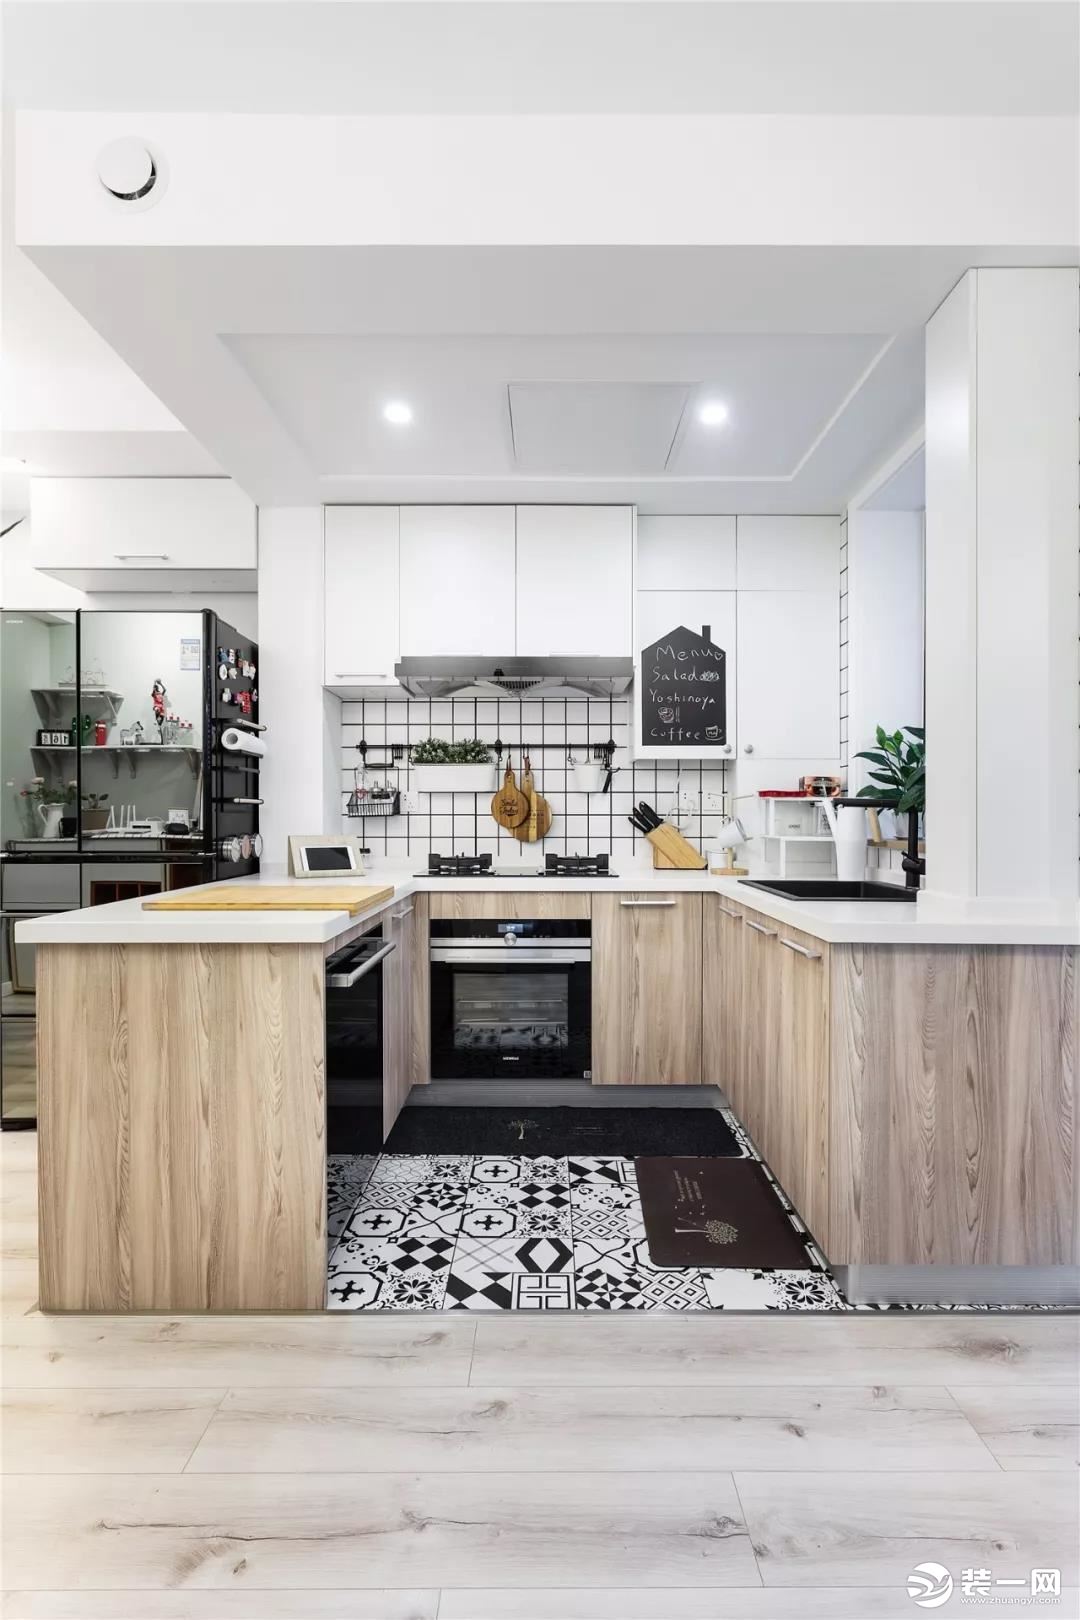  厨房地面铺设黑白马赛克地砖，墙面铺贴小块白色瓷砖，搭配木纹柜台和宜家风格的餐具